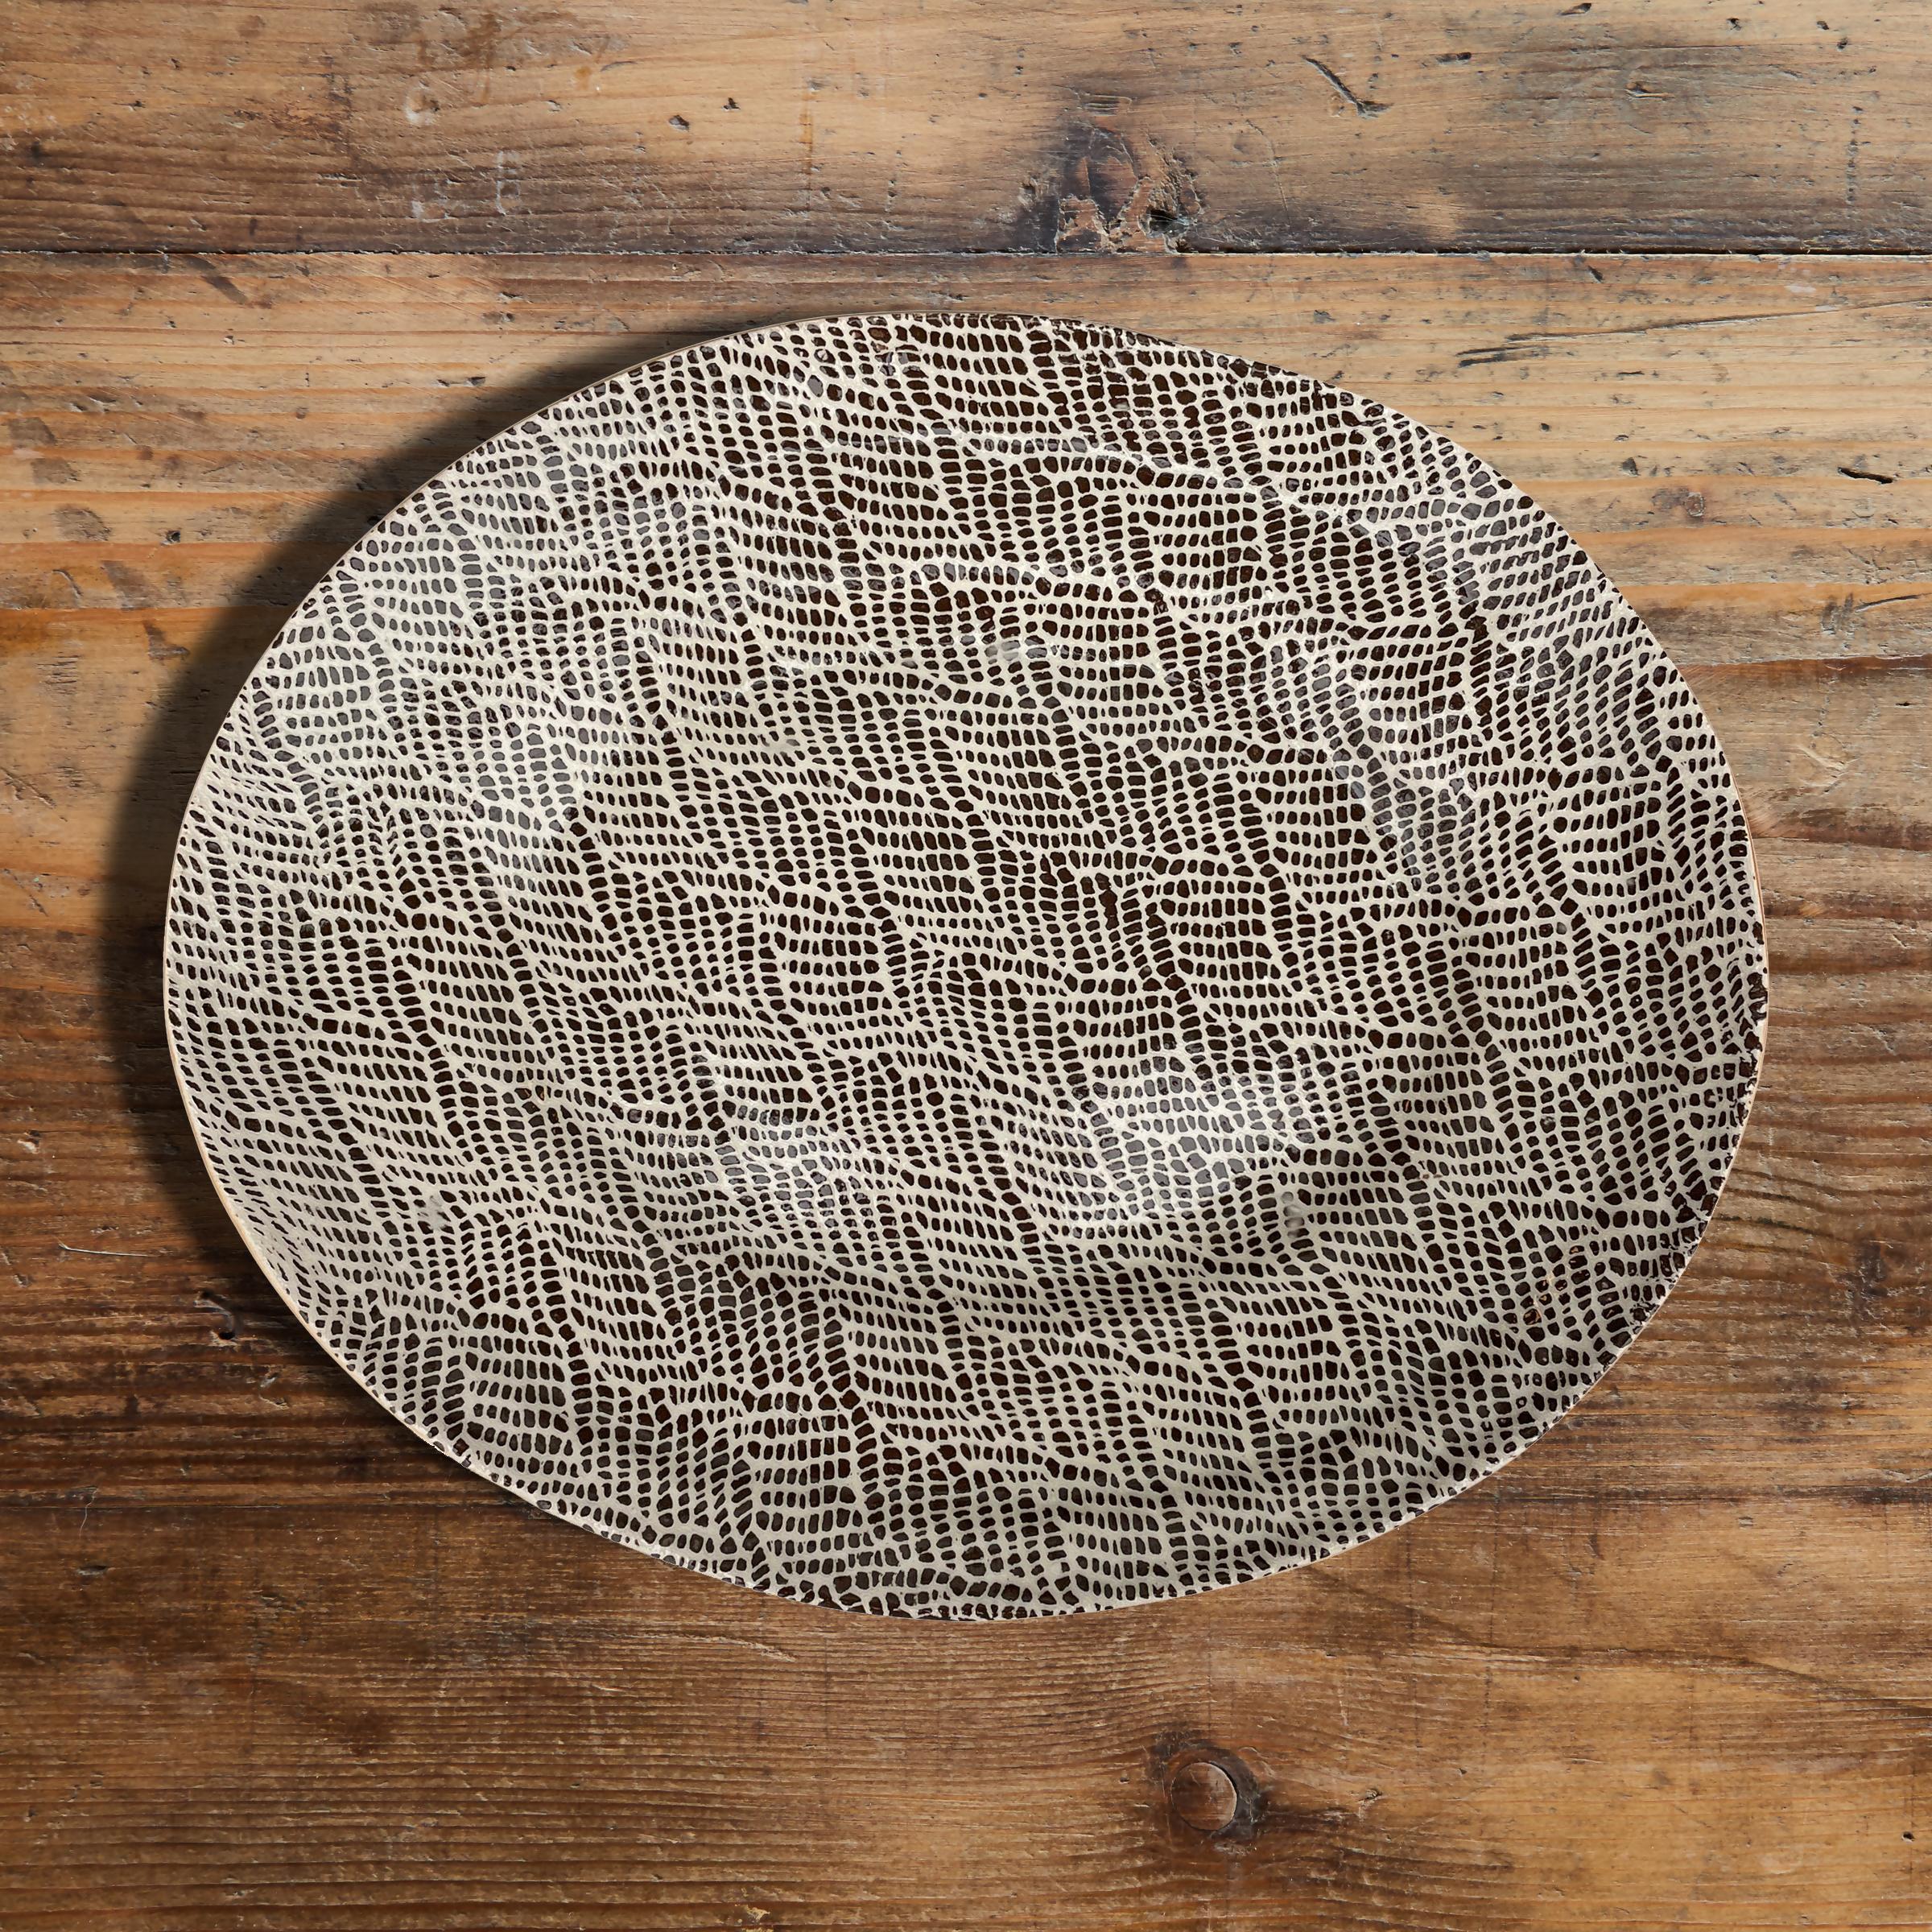 Eine fantastische, große, handgefertigte Platte von Studio Pottery mit einem aufgedruckten Muster und einer Glasur in Braun und Weiß. Unleserlich auf dem Boden signiert und datiert 2016.